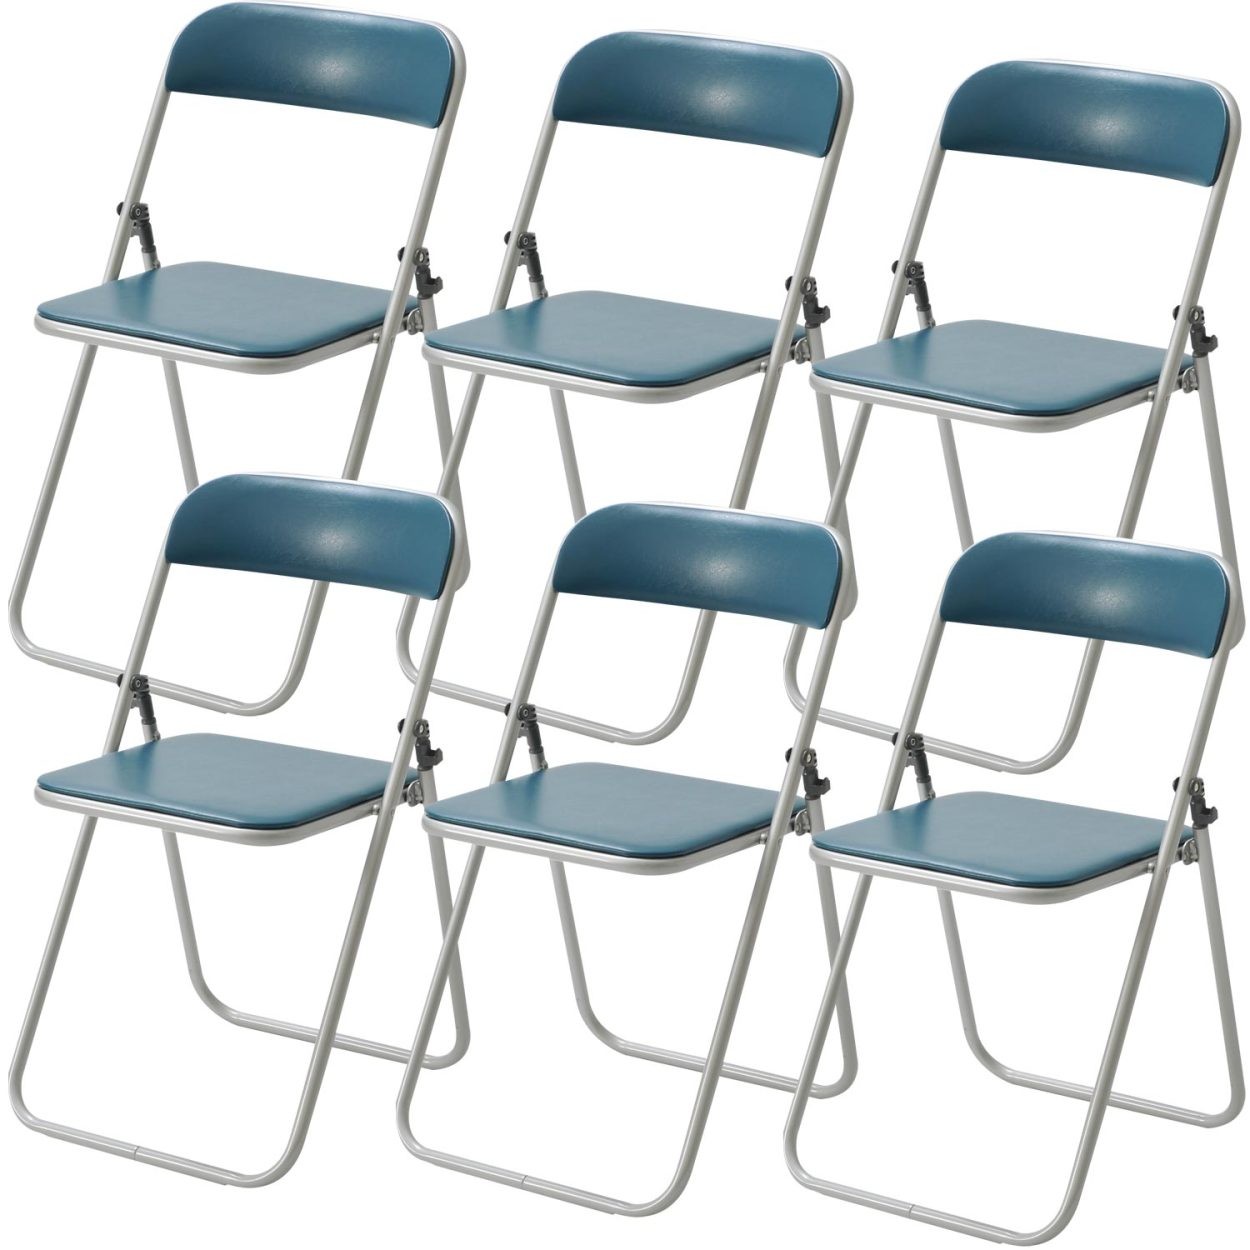 未使用品 パイプ椅子 6脚セット ミーティングチェア 会議イス 会議椅子 スタッキングチェア パイプチェア パイプイス ライトブルー Dprd Jatimprov Go Id